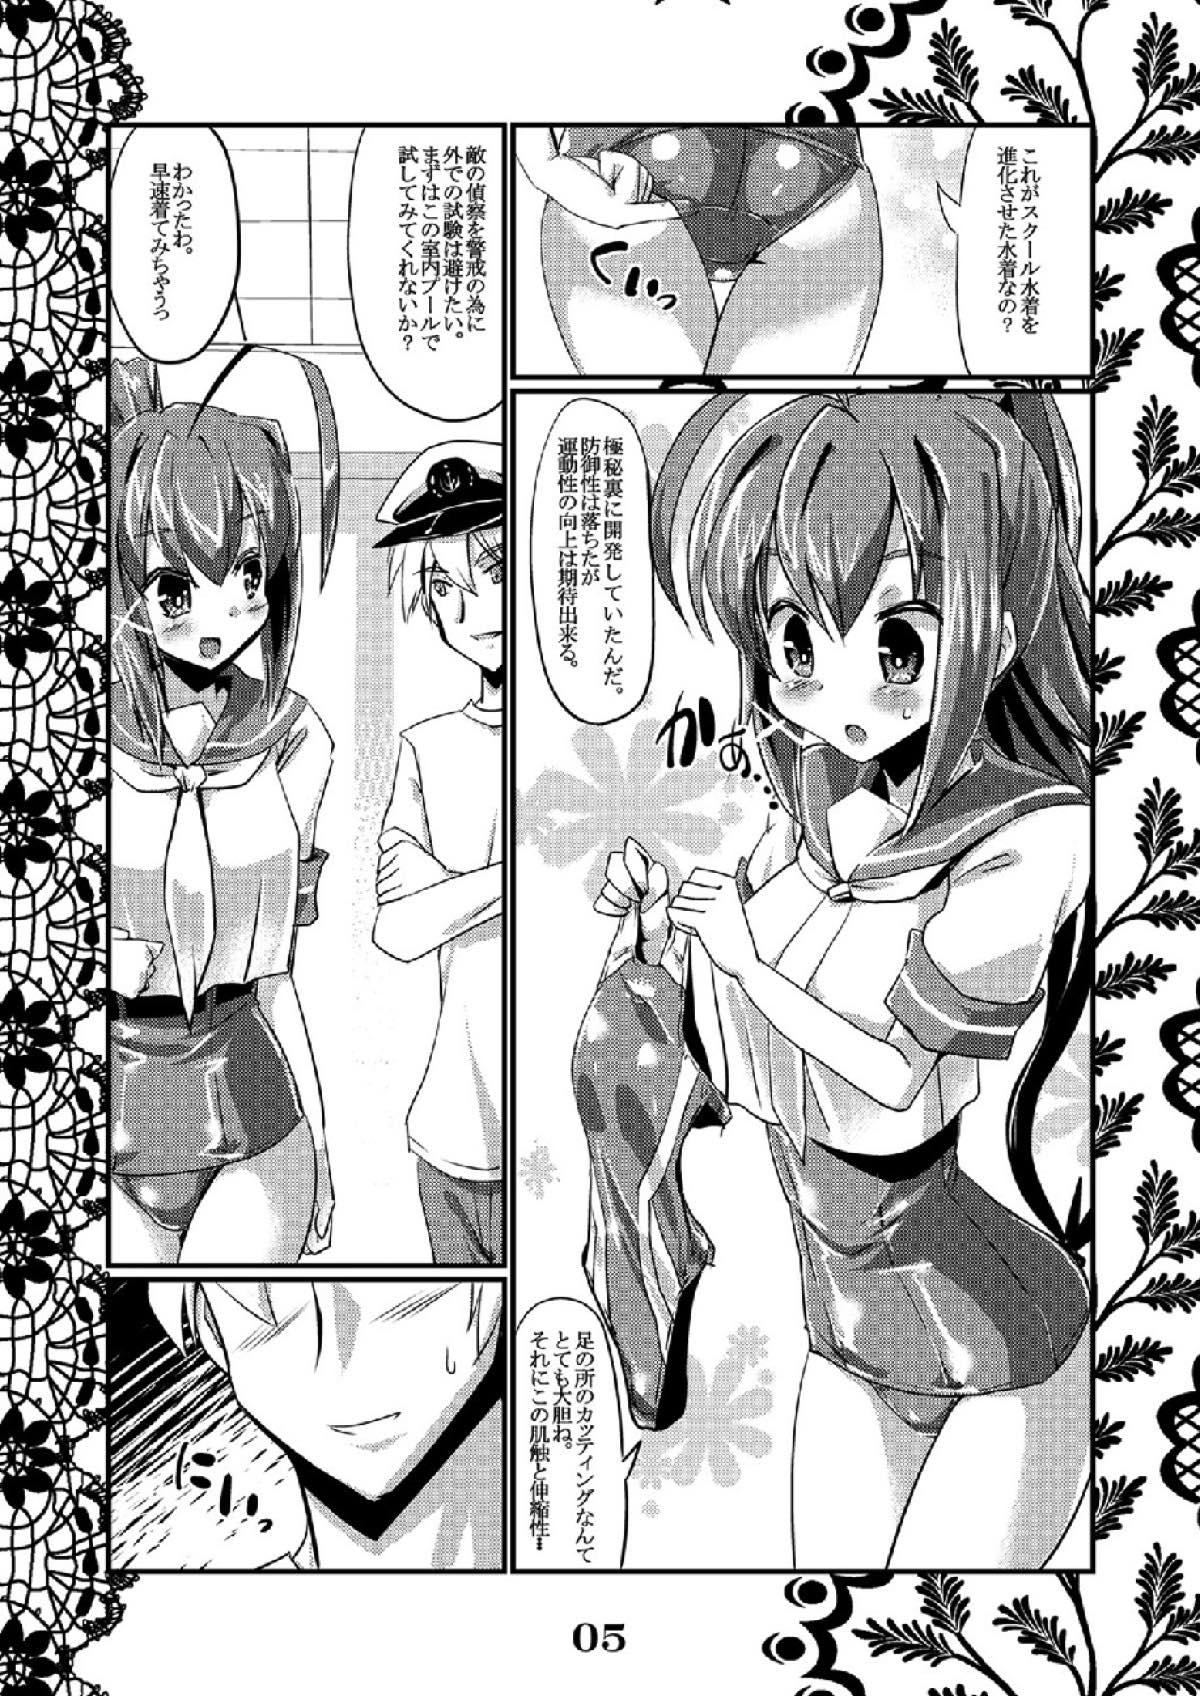 Exgirlfriend Rensou Harugatari 6 - Kantai collection Soft - Page 3